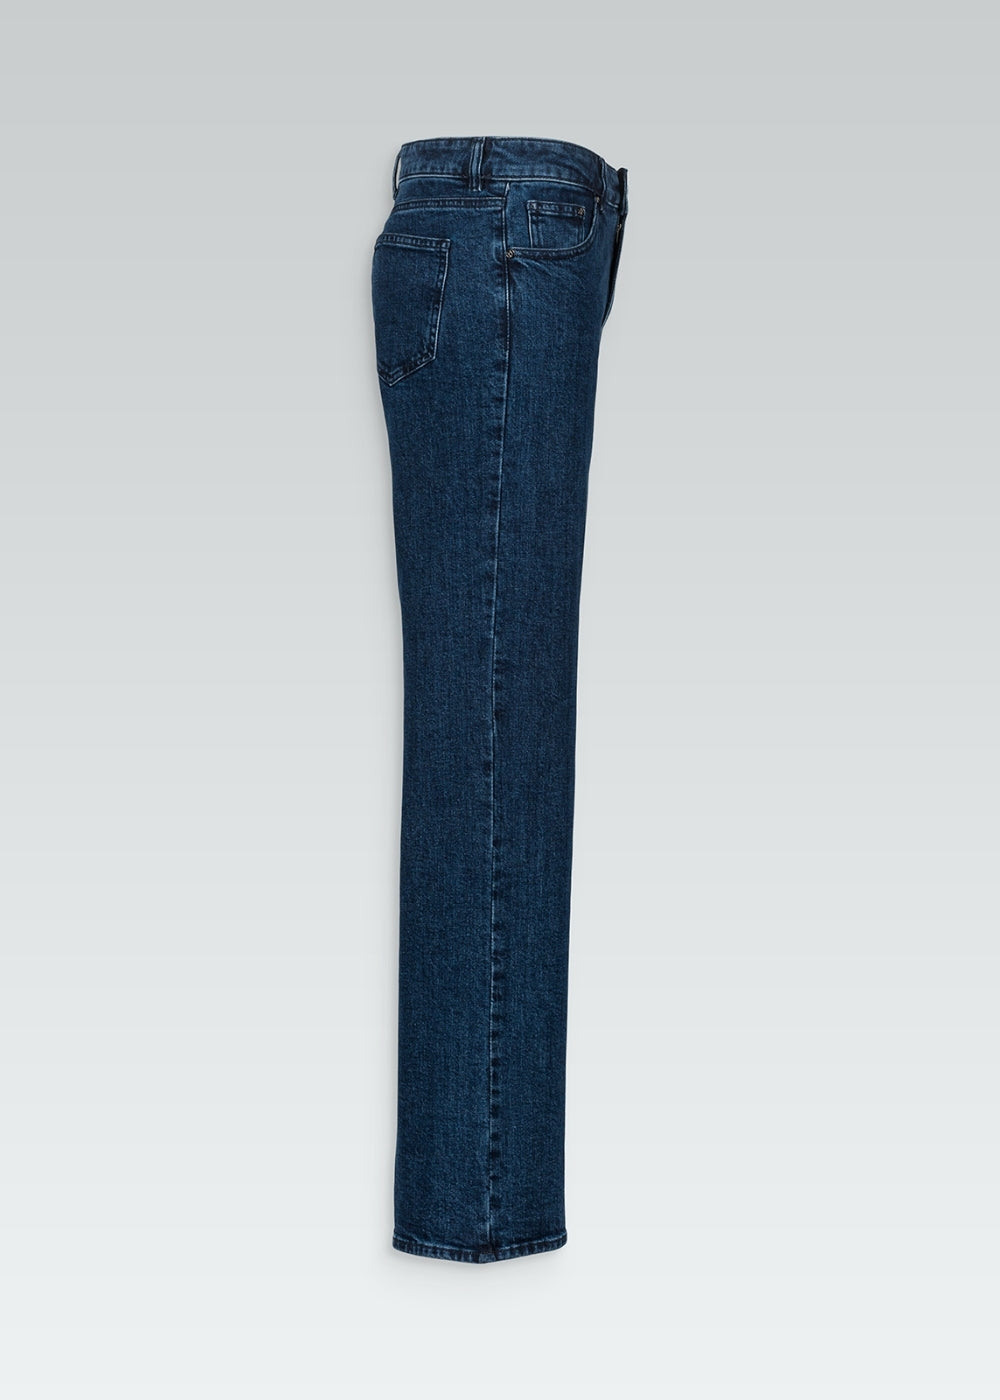 Jeans large bleu denim avec rivets en métal et boutons en corne